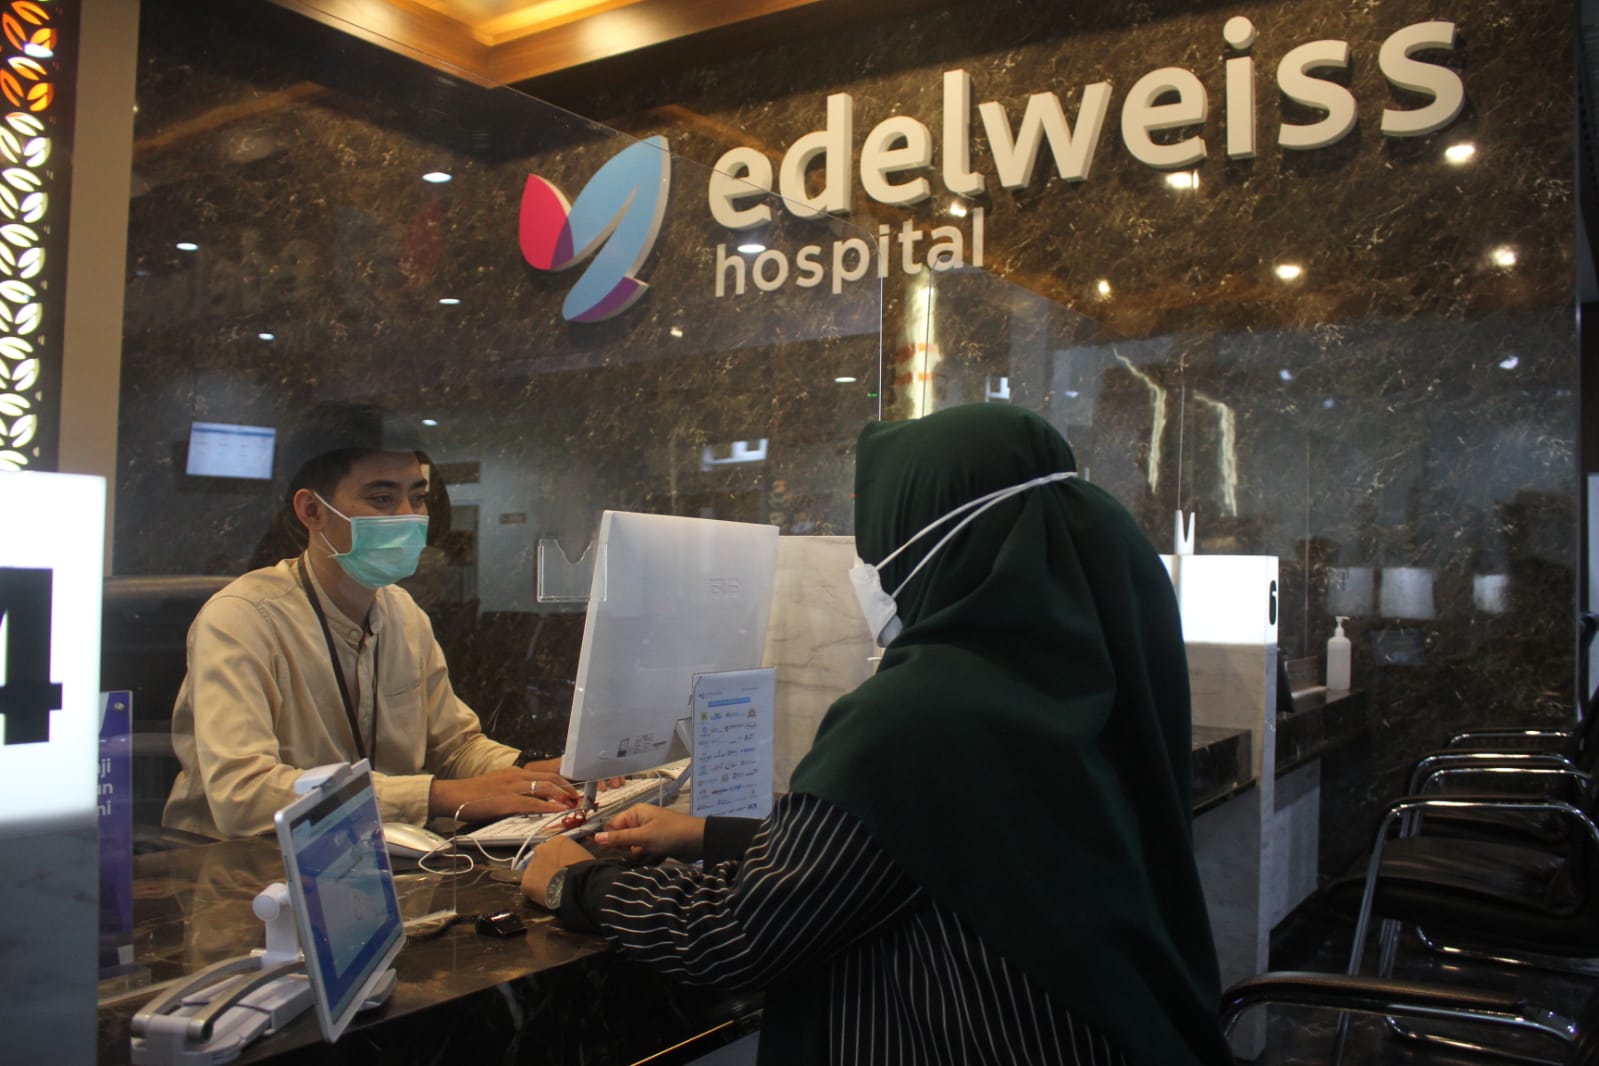 Edelweis Hospital Bangun Rumah Sakit di Cianjur untuk Penuhi Layanan Kesehatan Warga secara maksimal dengan fasilitas baik